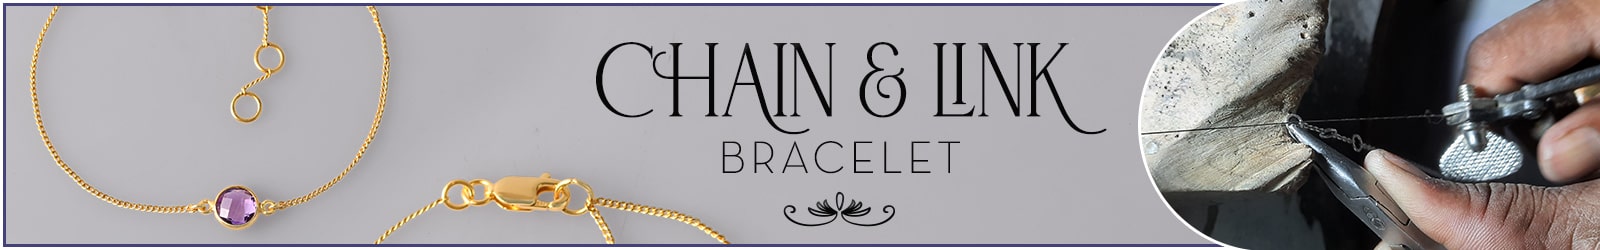 Wholesale sterling silver chain link bracelets manufacturer